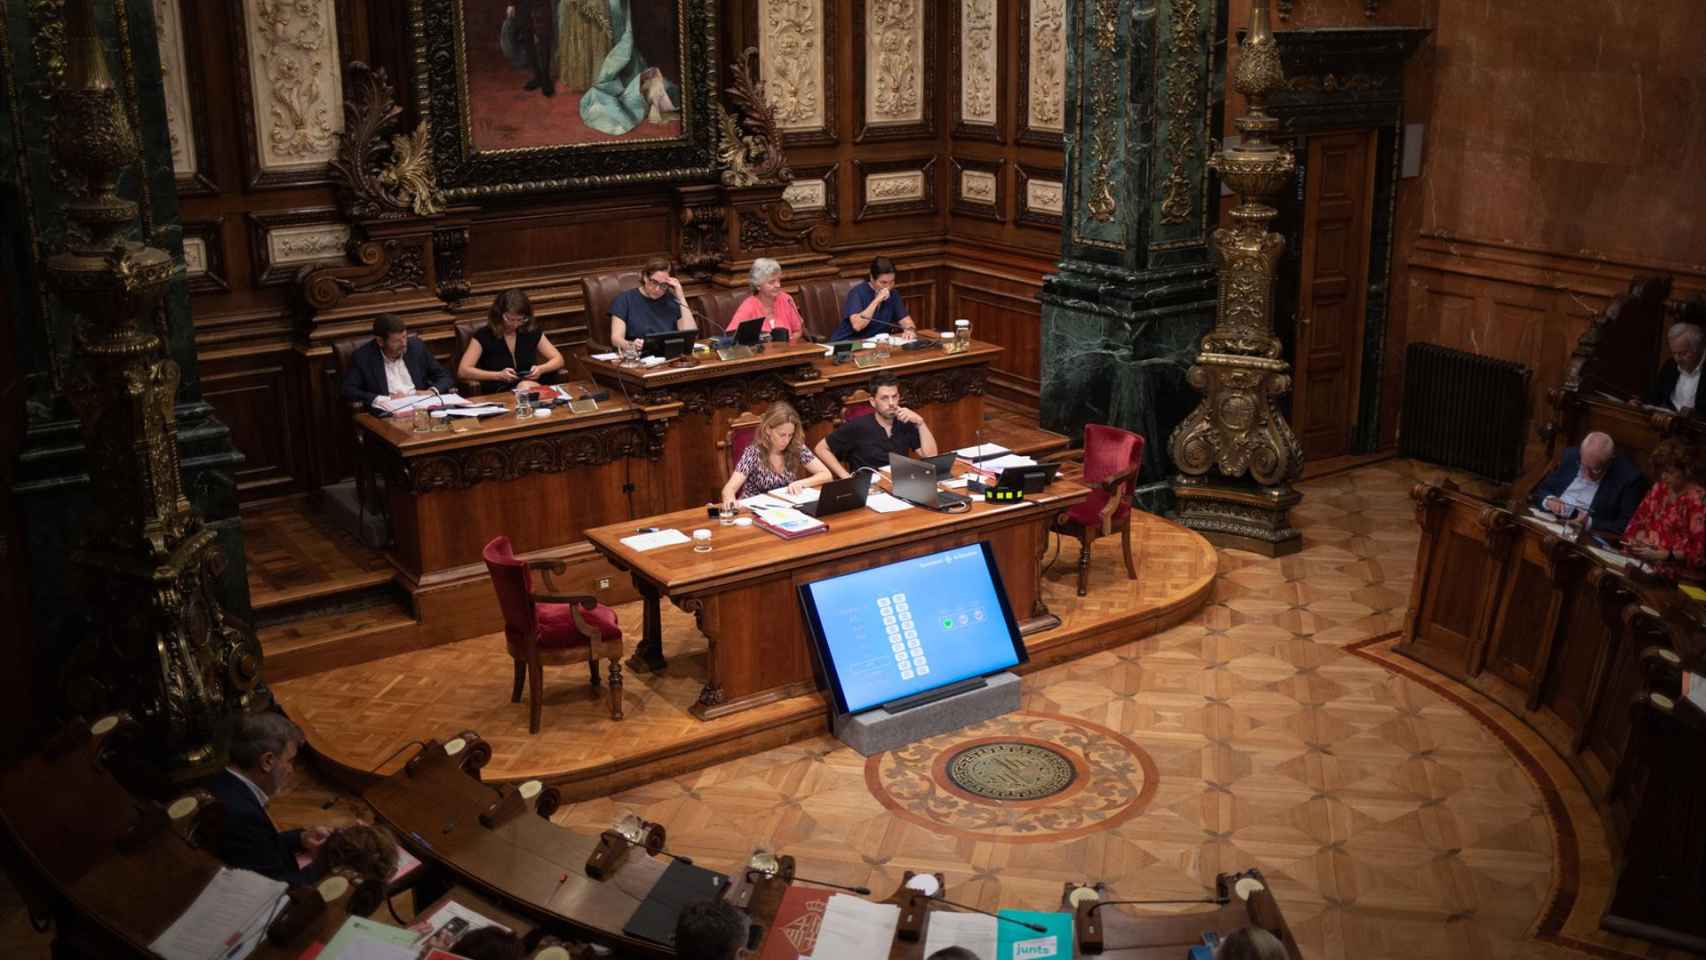 La alcaldesa de Barcelona, Ada Colau, preside una sesión plenaria en el Ayuntamiento de Barcelona / EUROPA PRESS - David Zorrakino